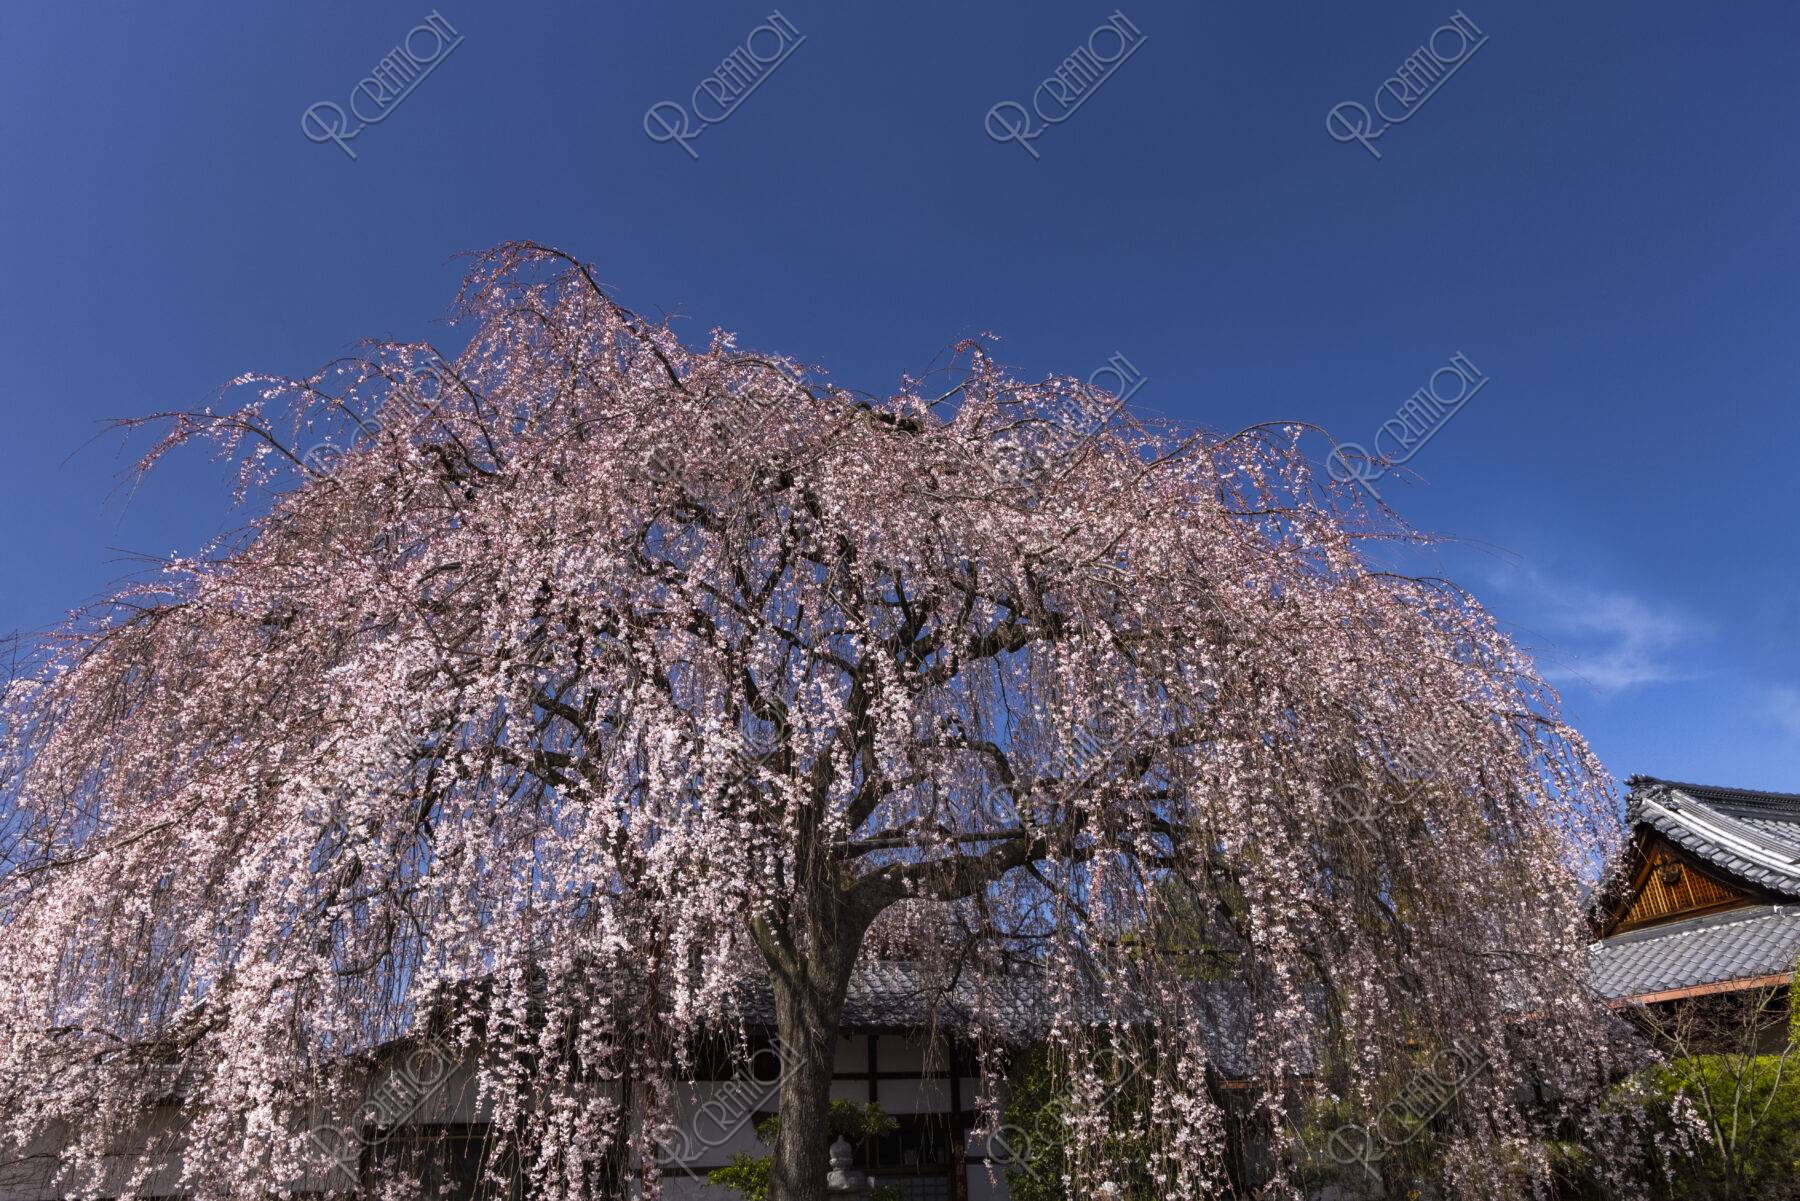 本満寺のしだれ桜